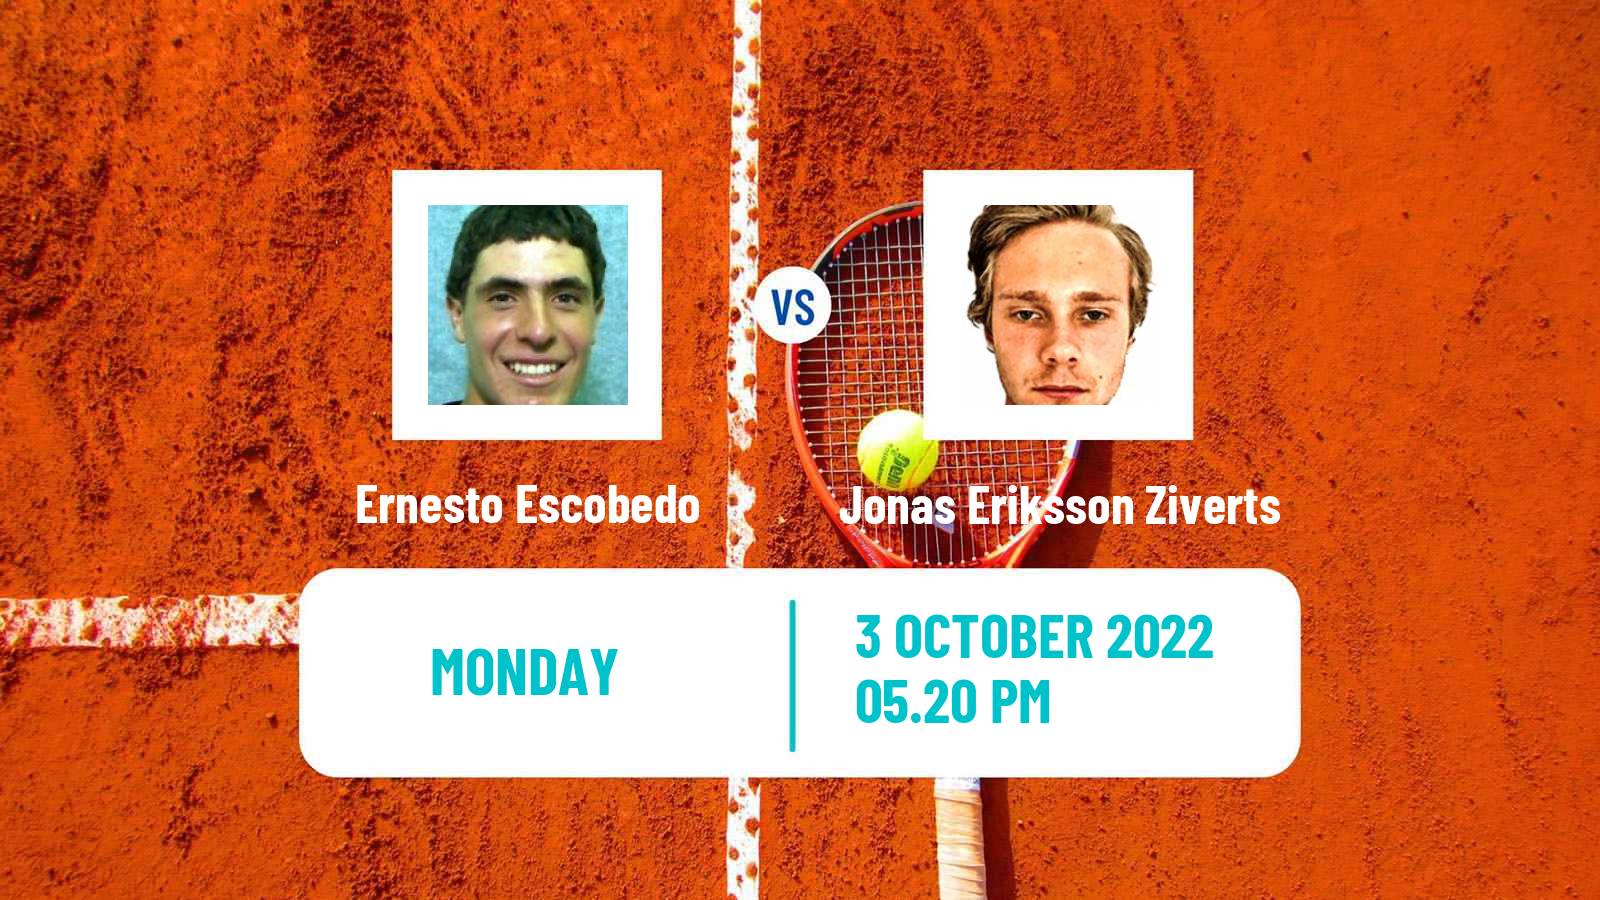 Tennis ATP Challenger Ernesto Escobedo - Jonas Eriksson Ziverts